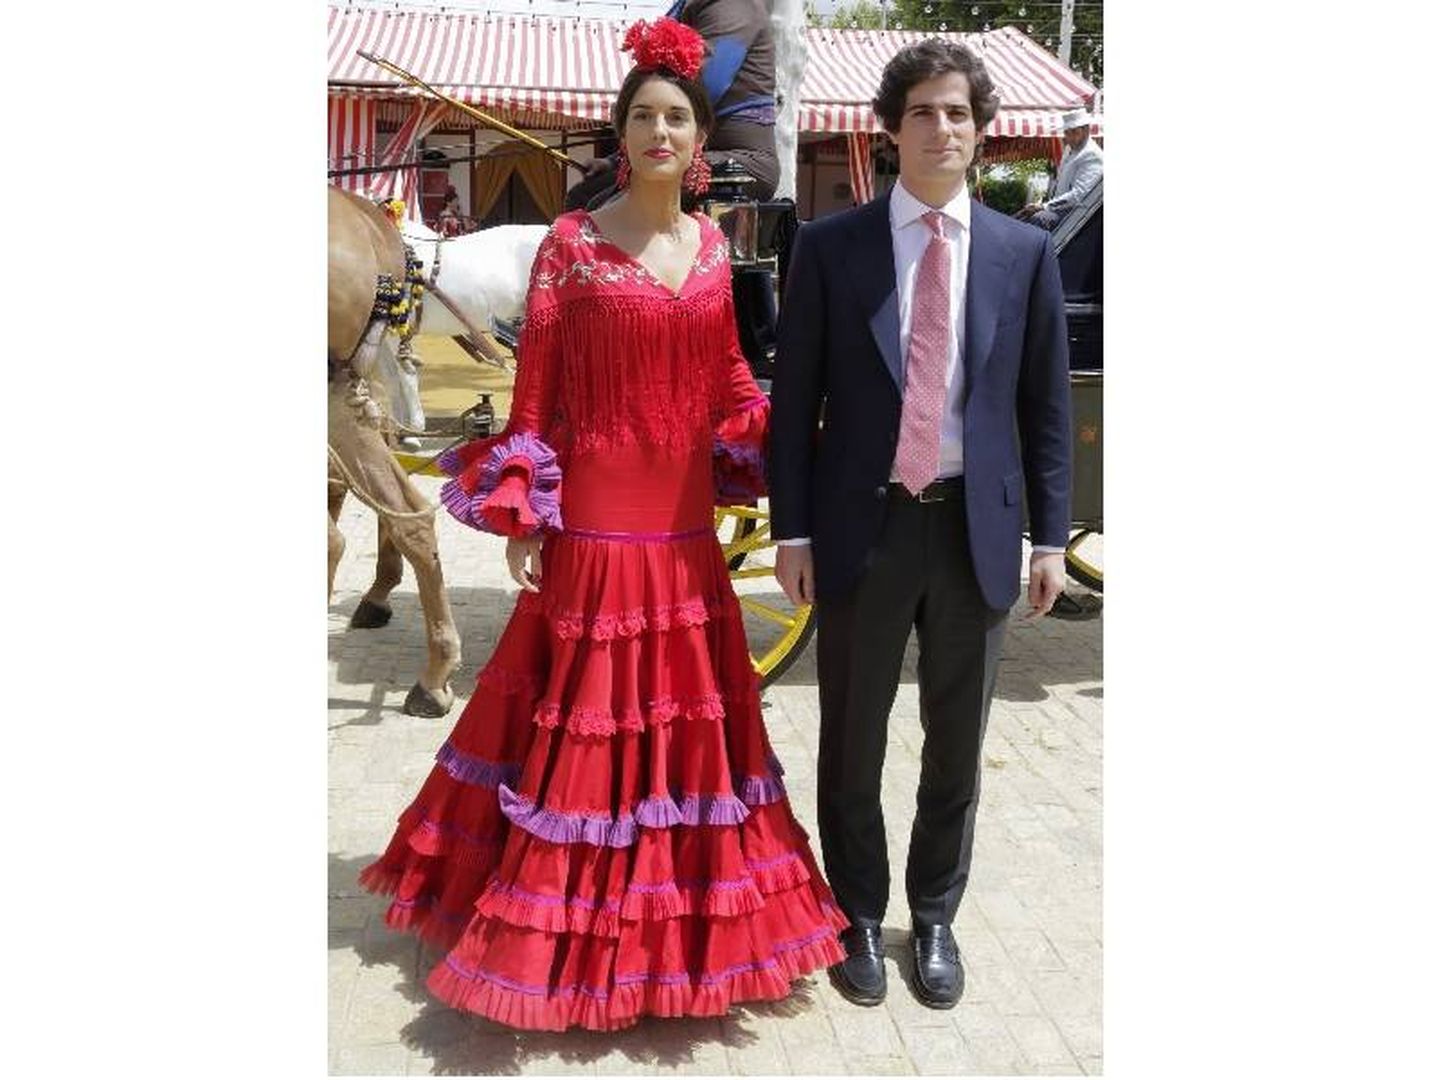 Sofía Palazuelo y el duque de Huéscar en la Feria de Abril. (Gtres) 